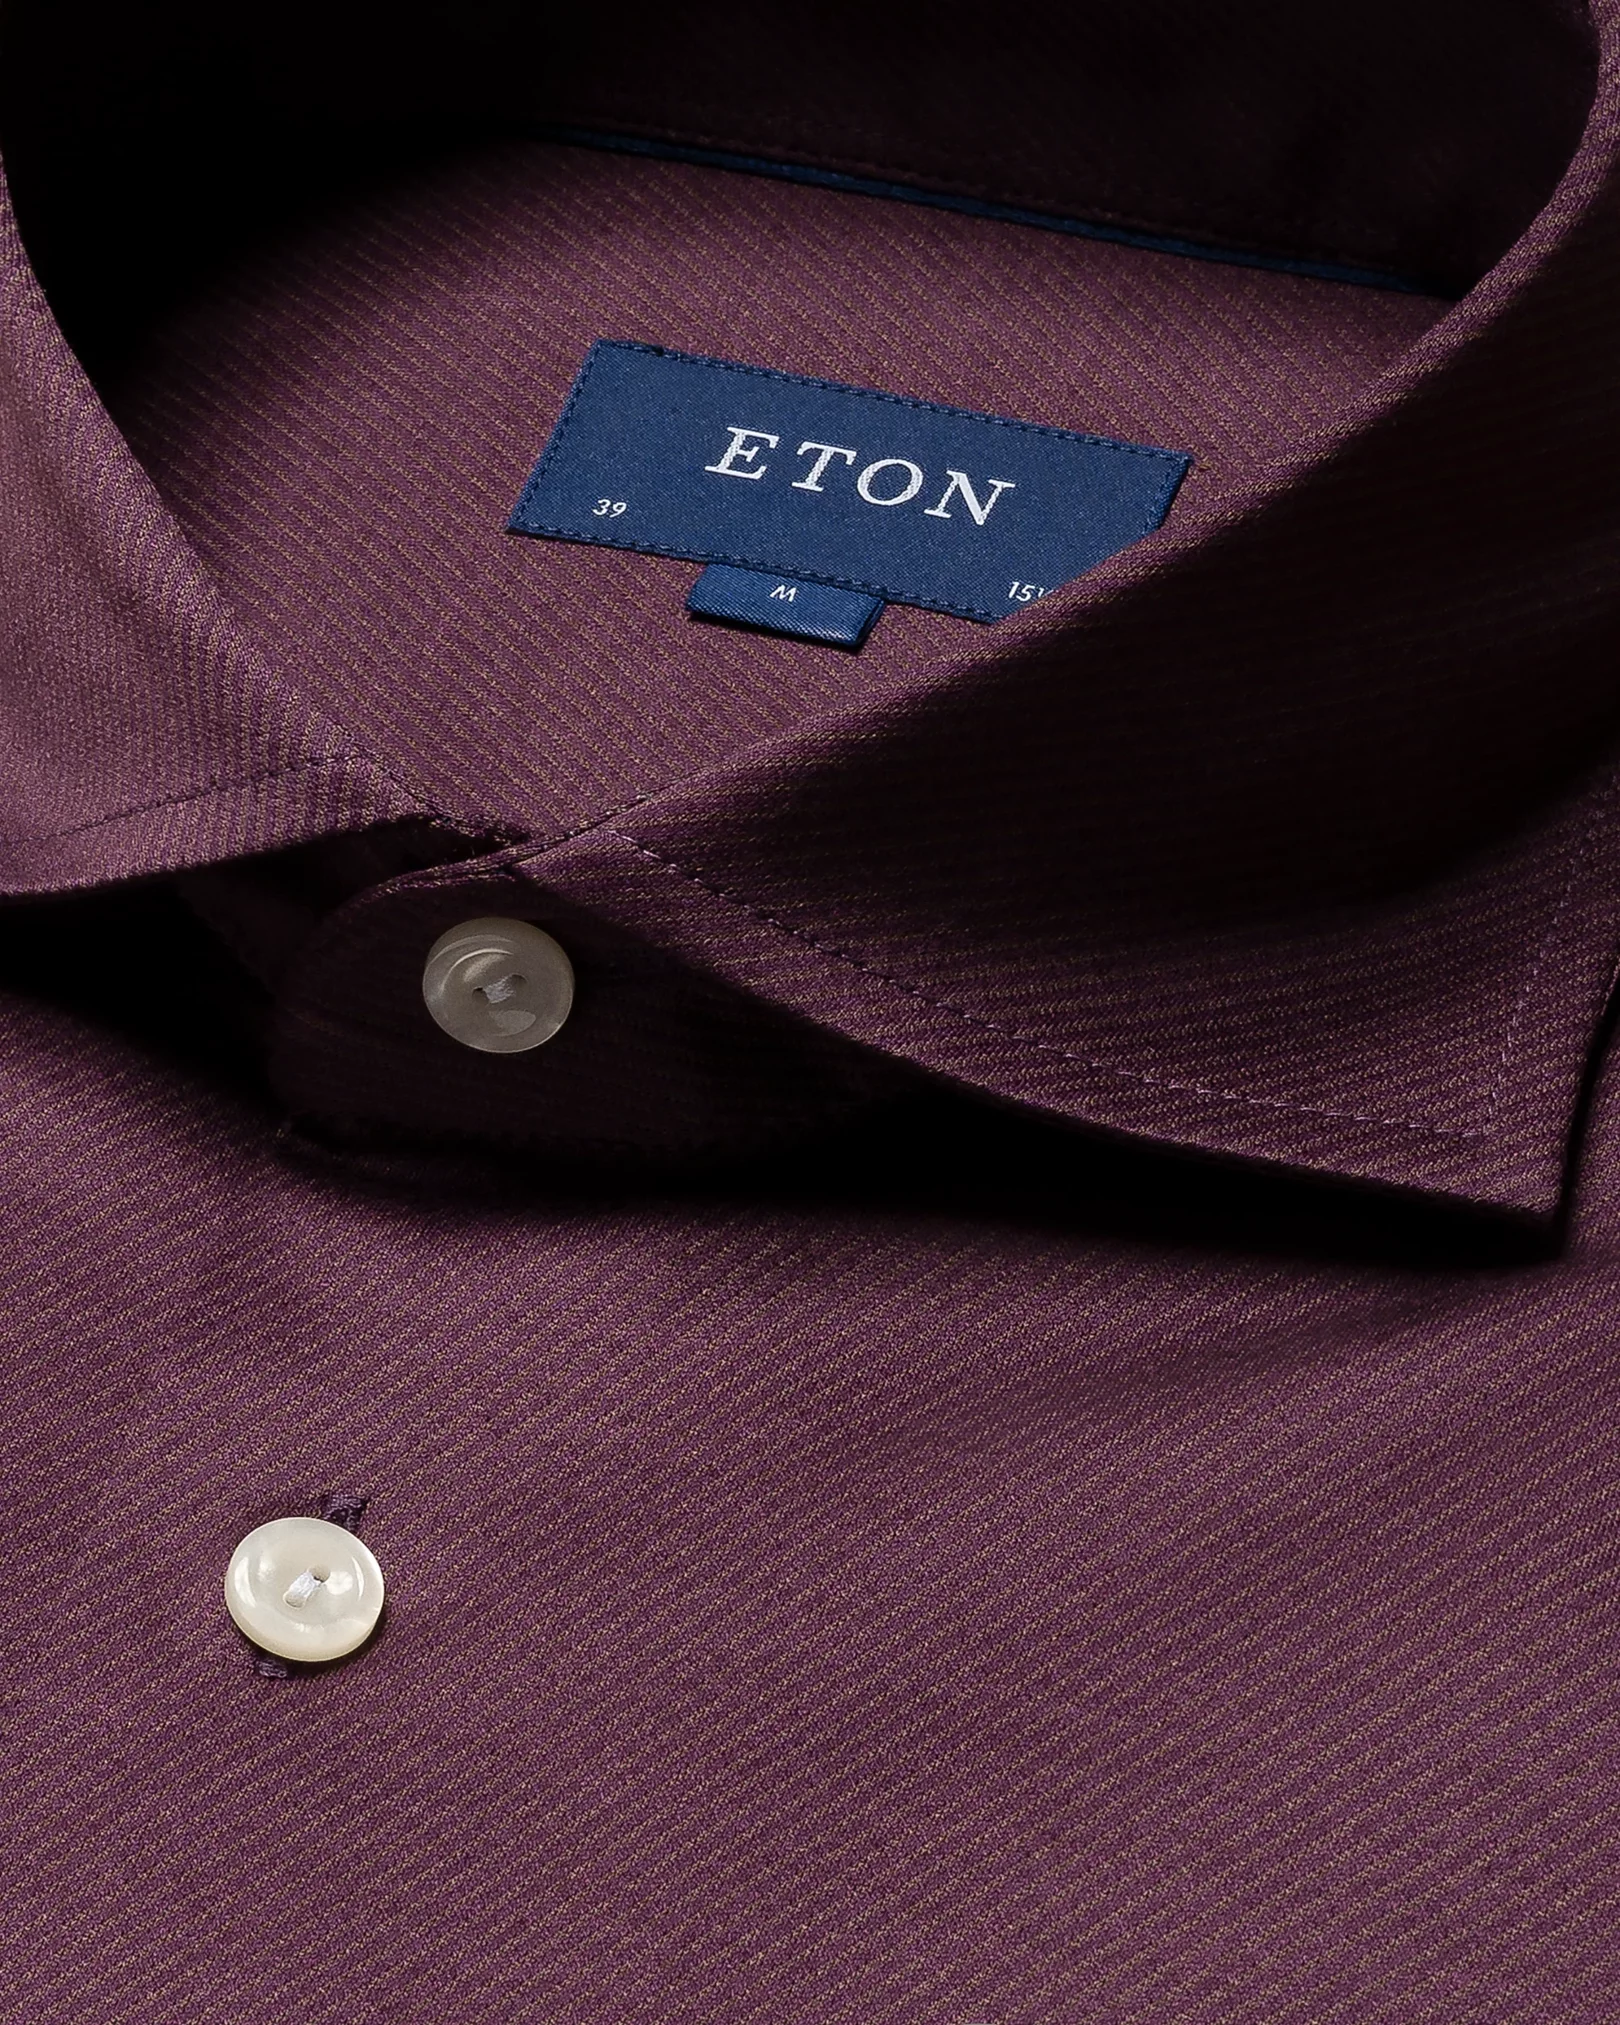 Eton - dark purple knit king